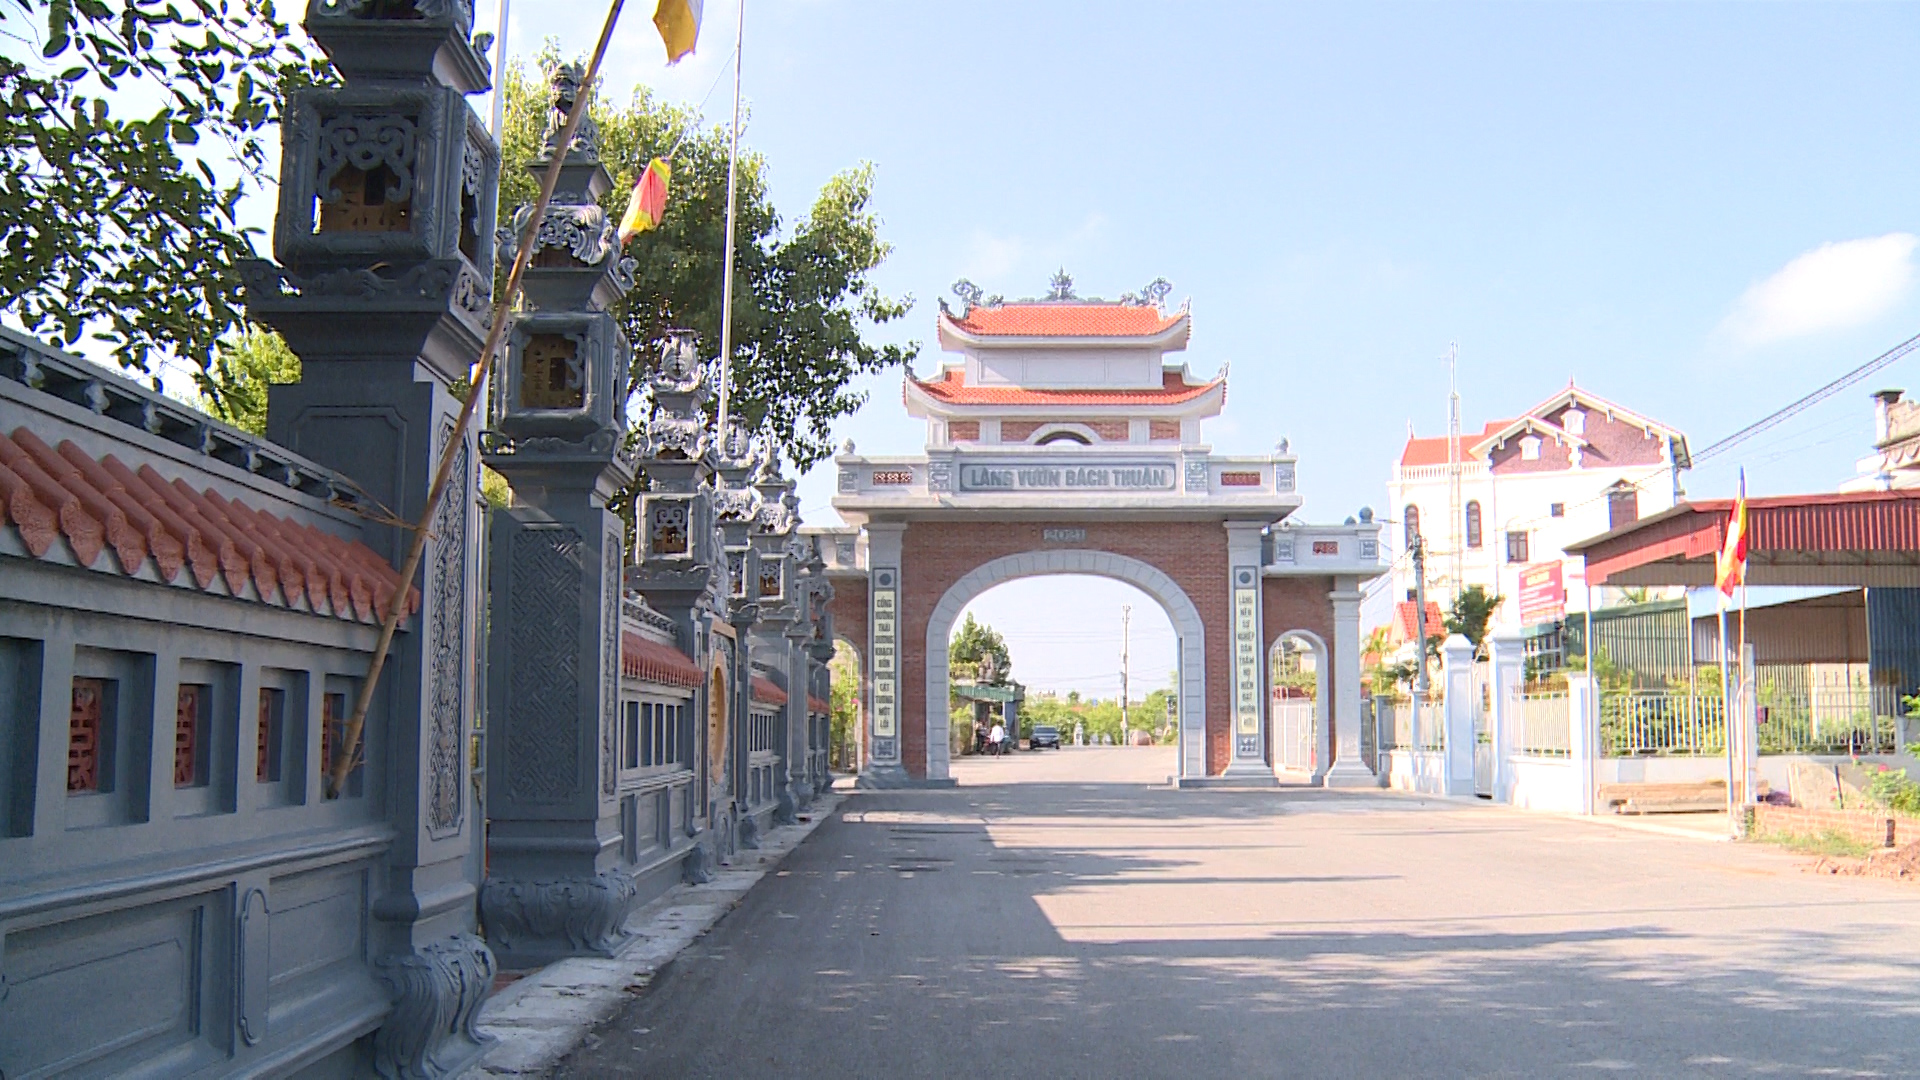 Làng vườn Bách Thuận đất Thái Bình đi đâu cũng nhìn thấy cây cảnh, cổng nhà đẹp như phim - Ảnh 2.